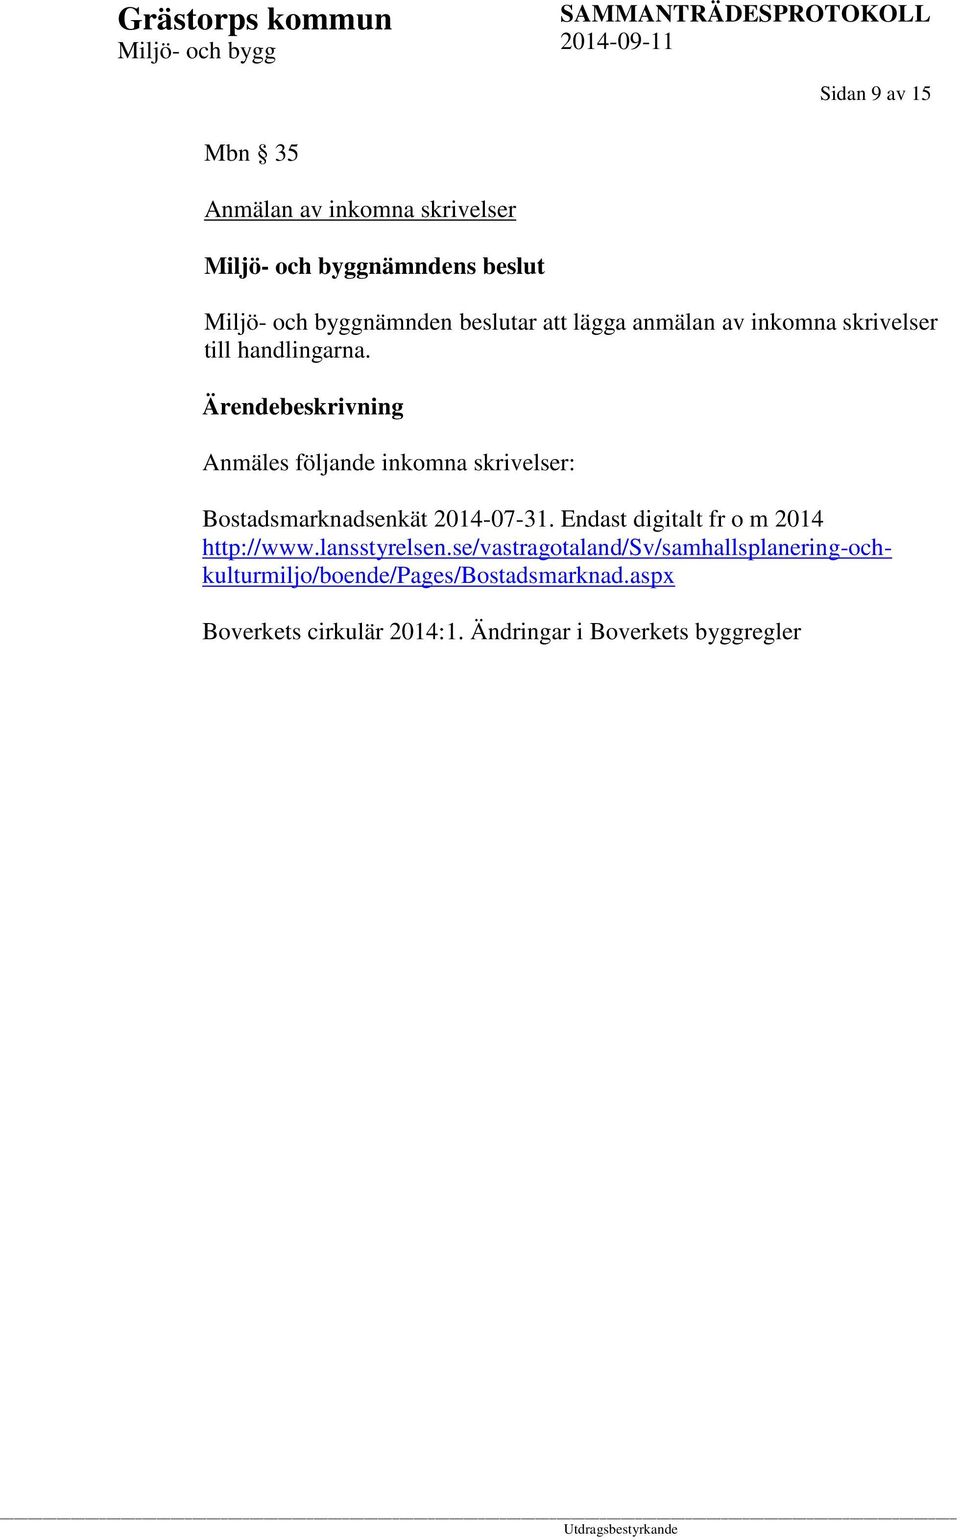 Anmäles följande inkomna skrivelser: Bostadsmarknadsenkät 2014-07-31.